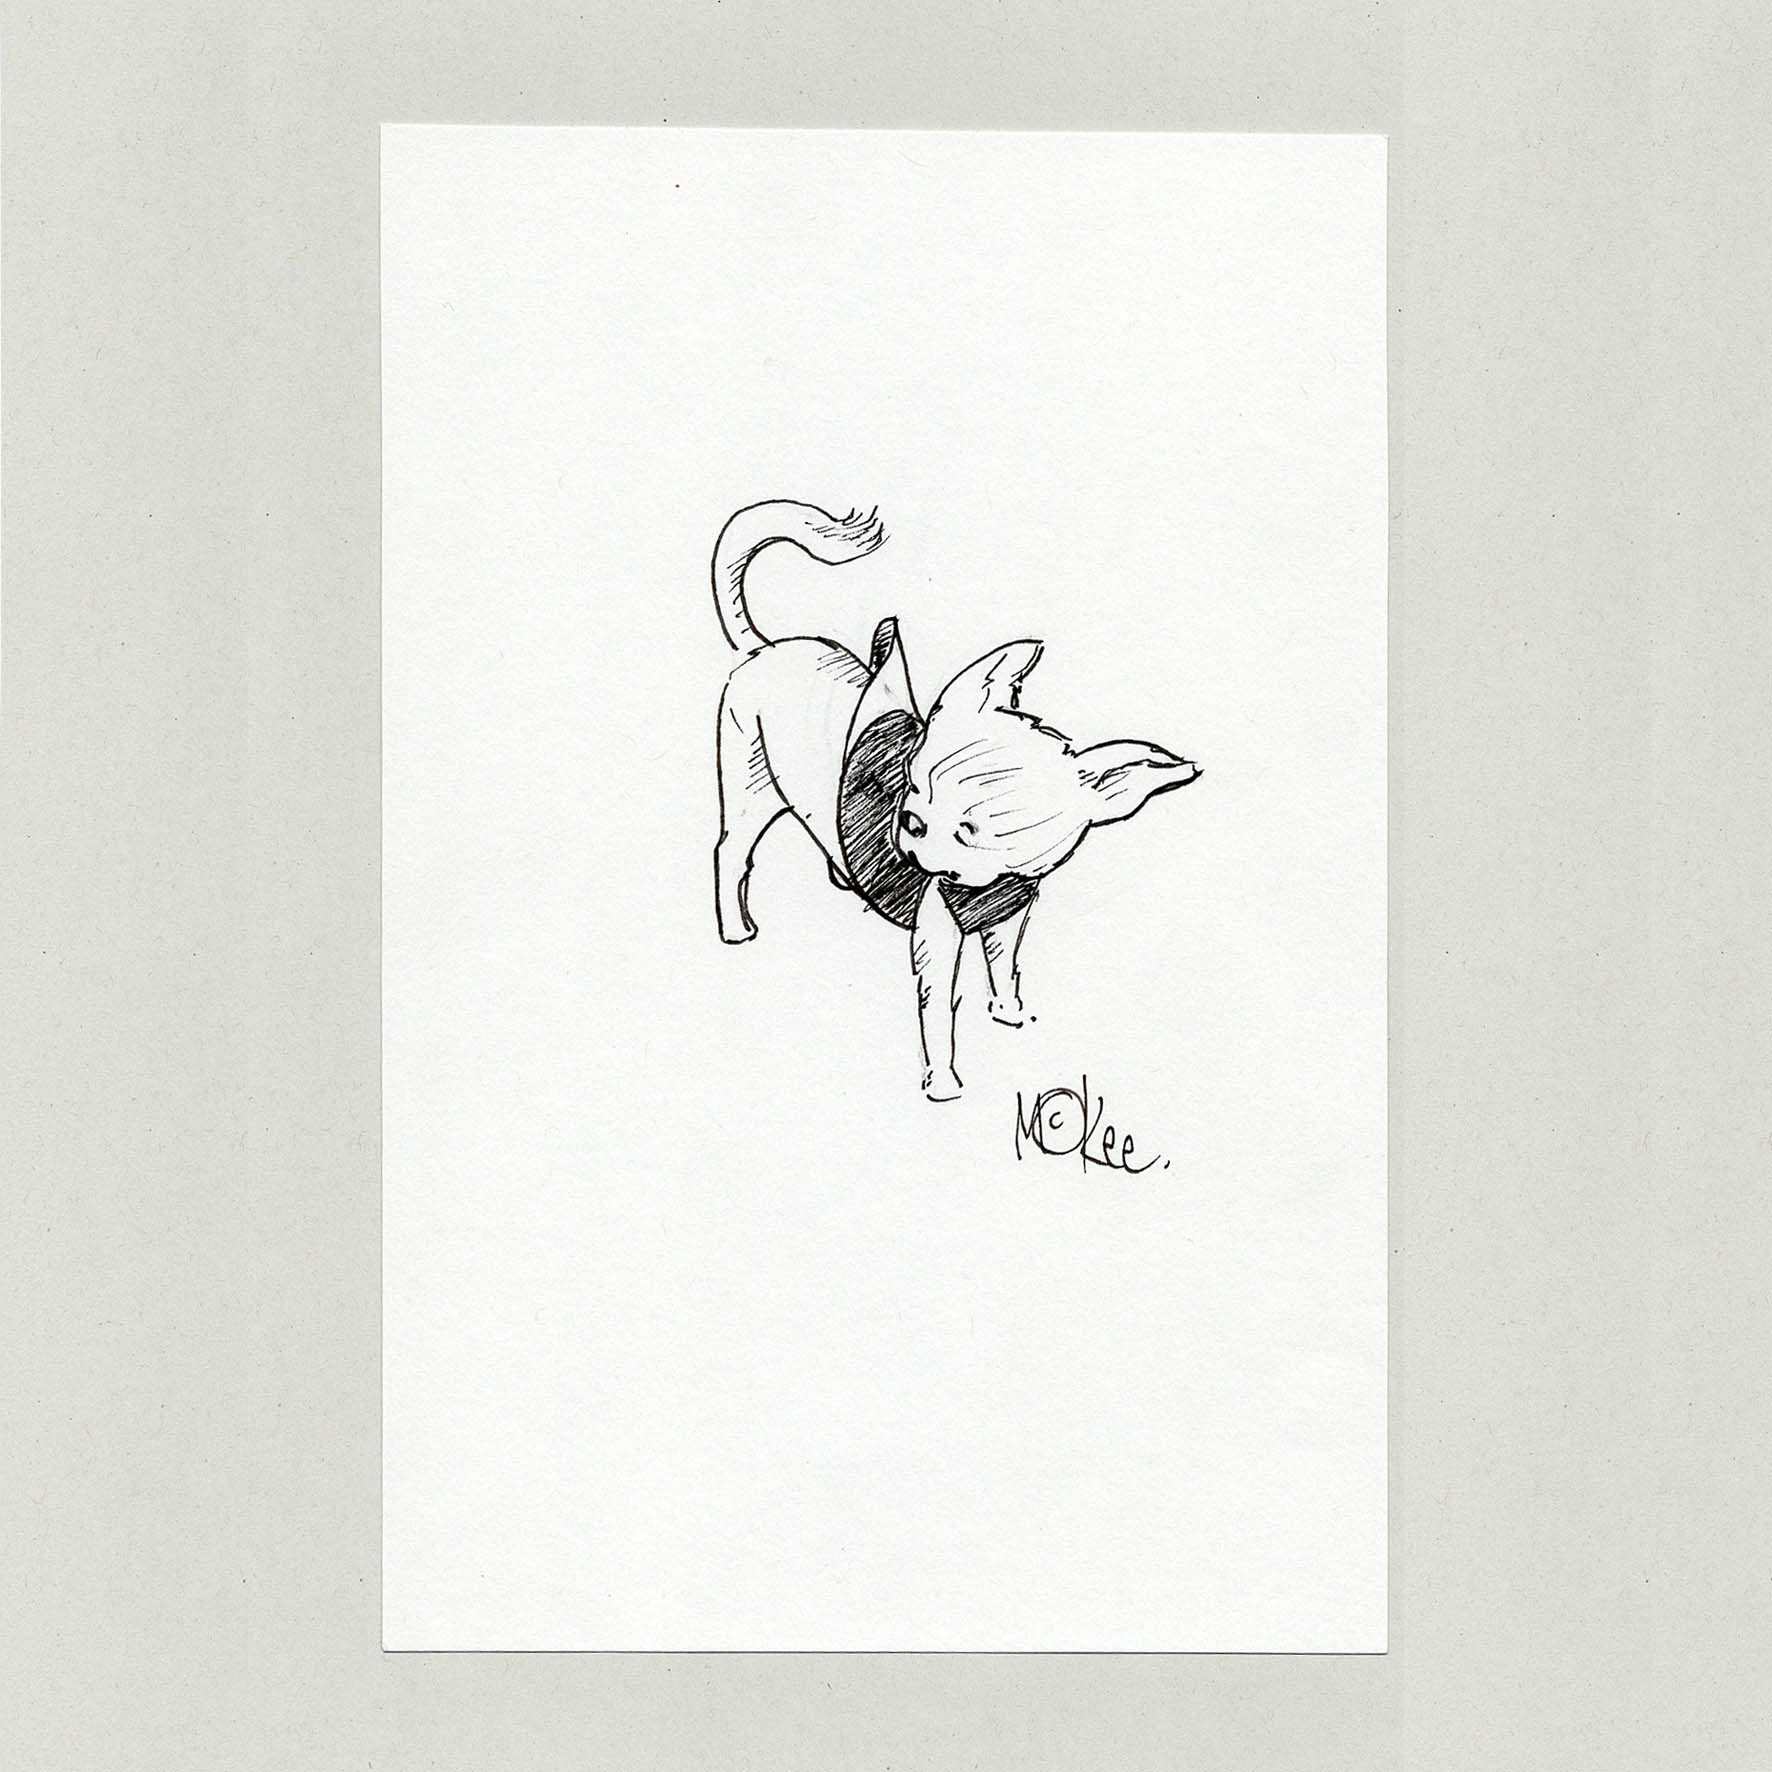 Chihuahua, Study - Original Sketch